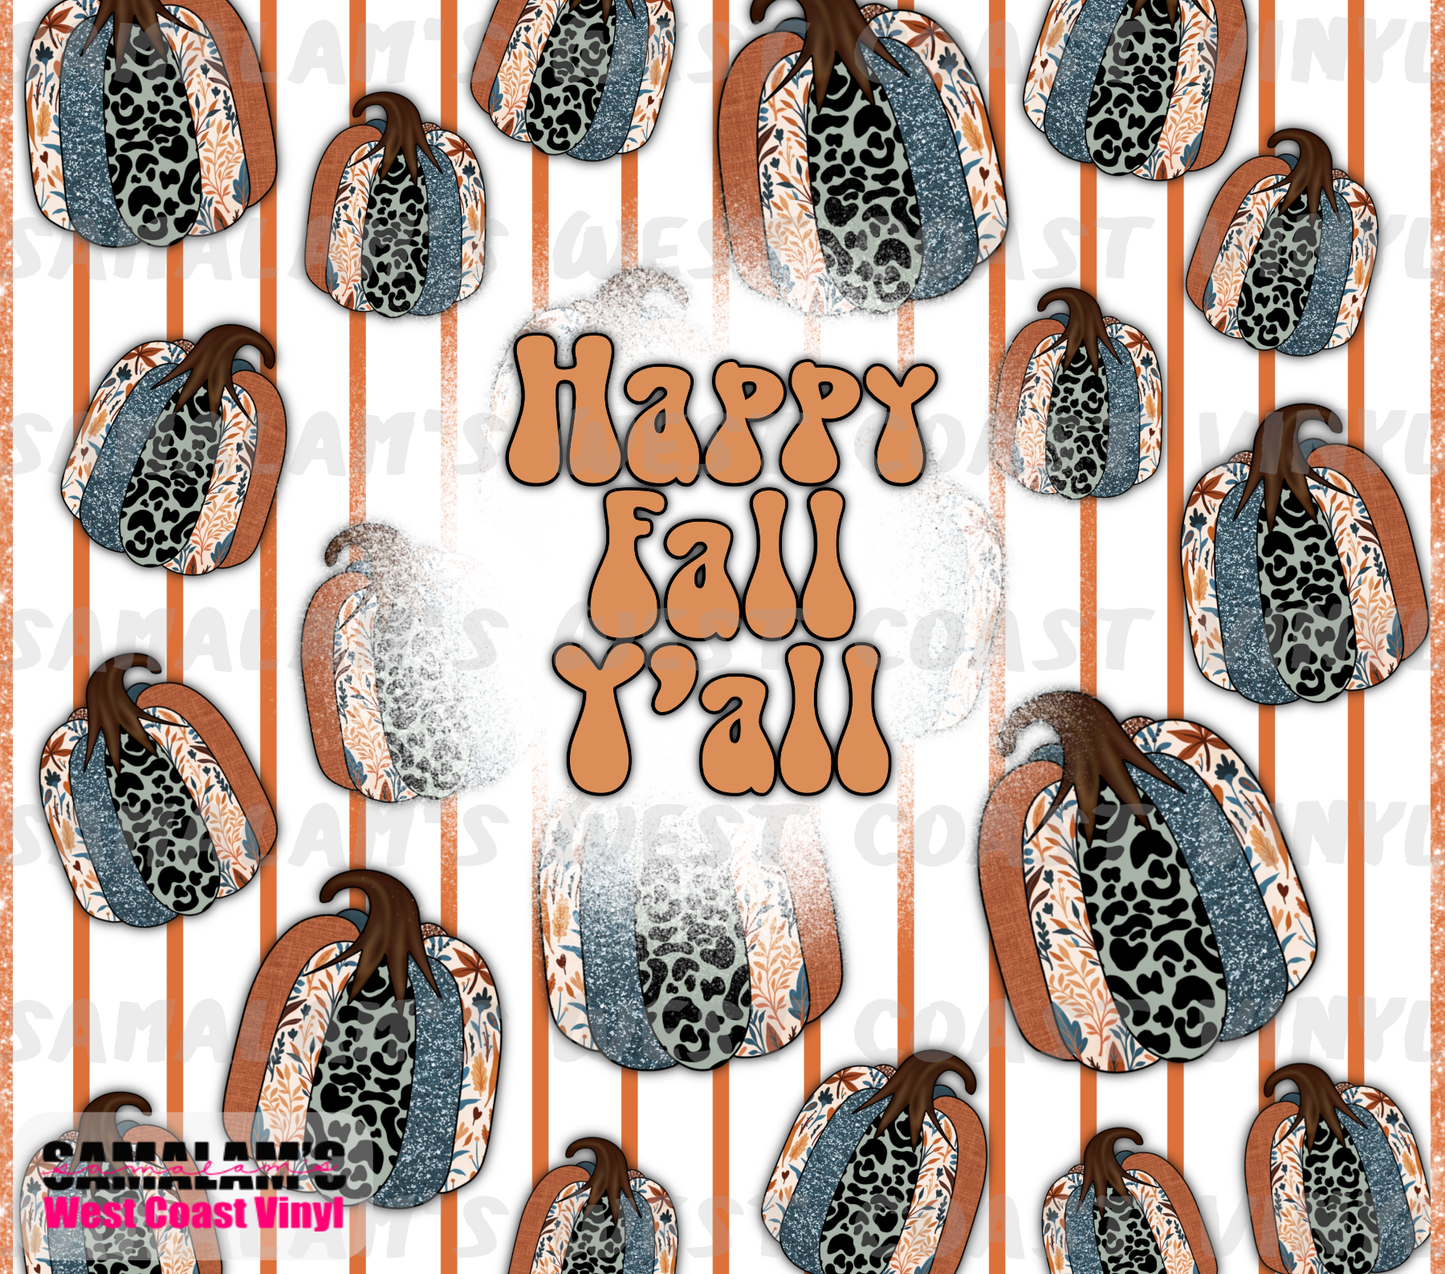 Happy Fall Y'All - Tumbler Wrap